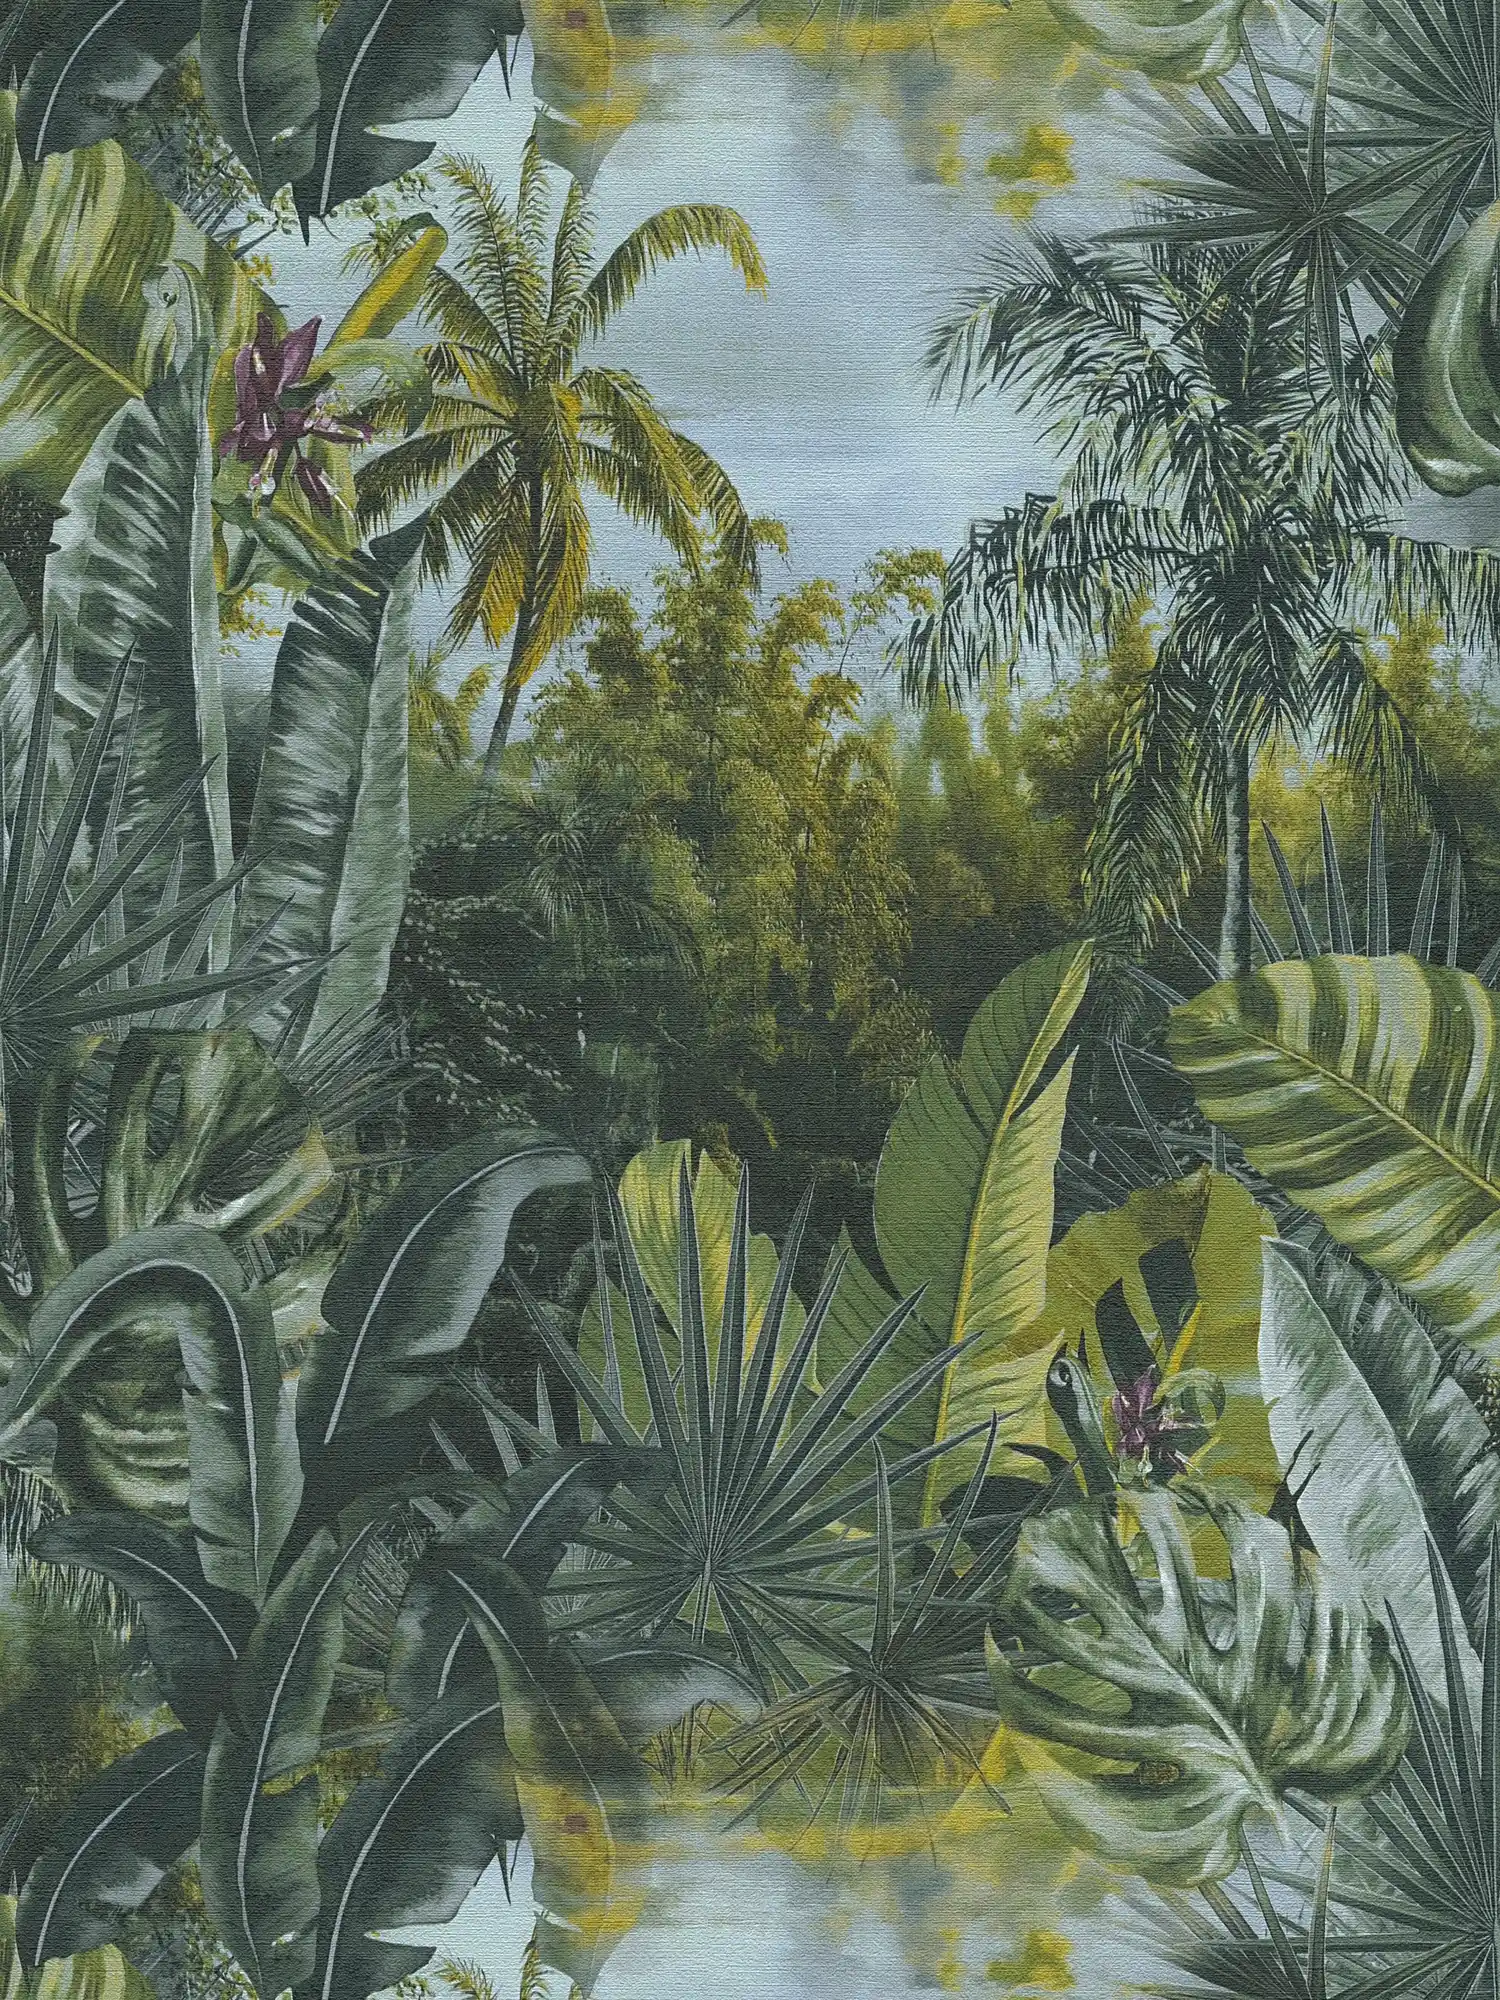 Vliesbehang jungle met palmen & bladeren design - groen
